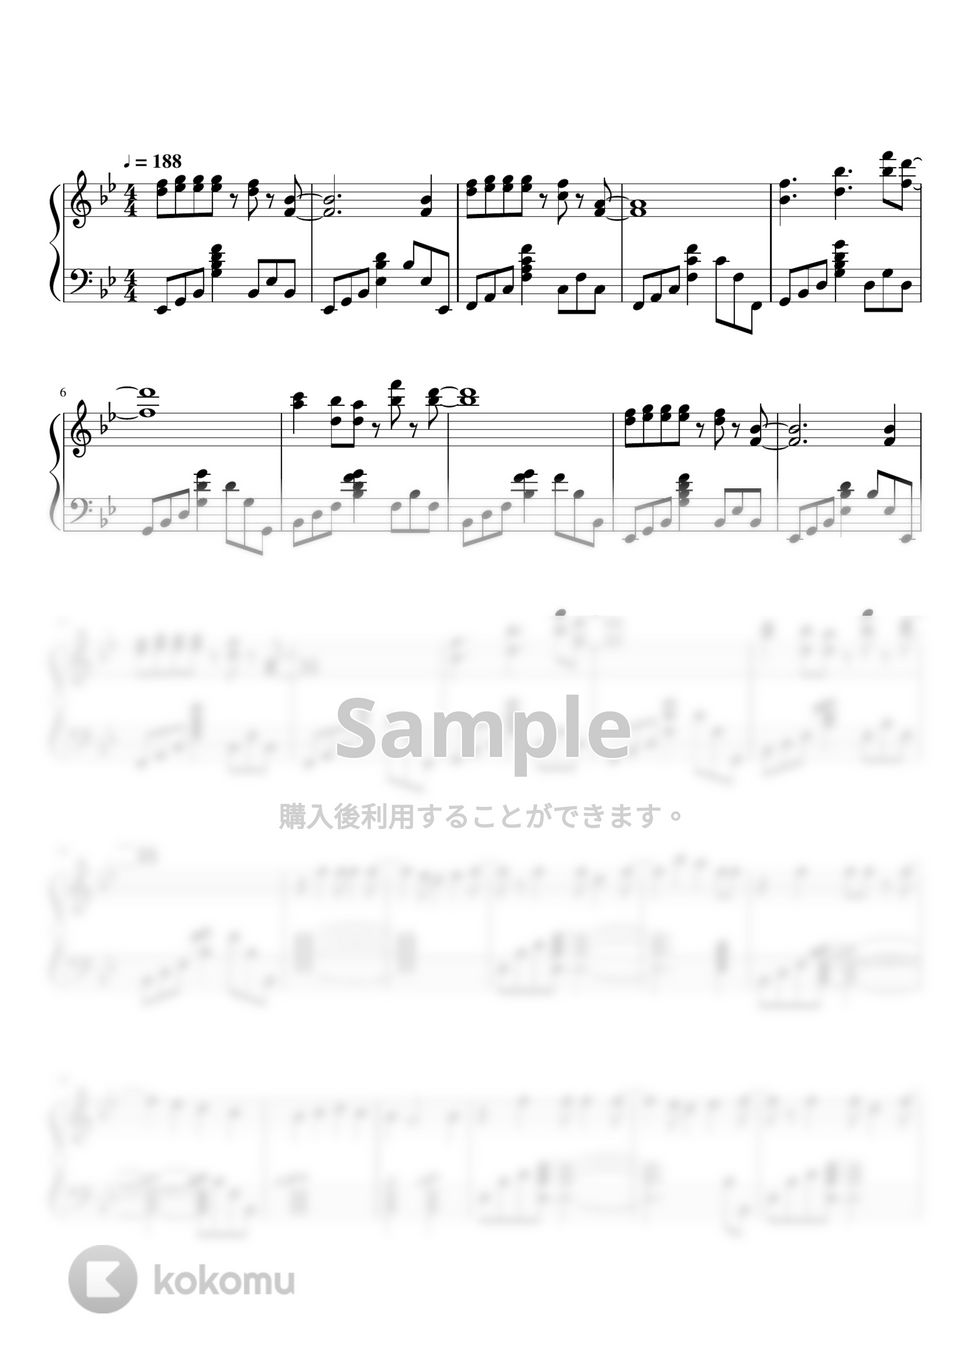 クリープハイプ - おやすみ泣き声、さよなら歌姫 (ピアノソロ) by 山崎たくわん